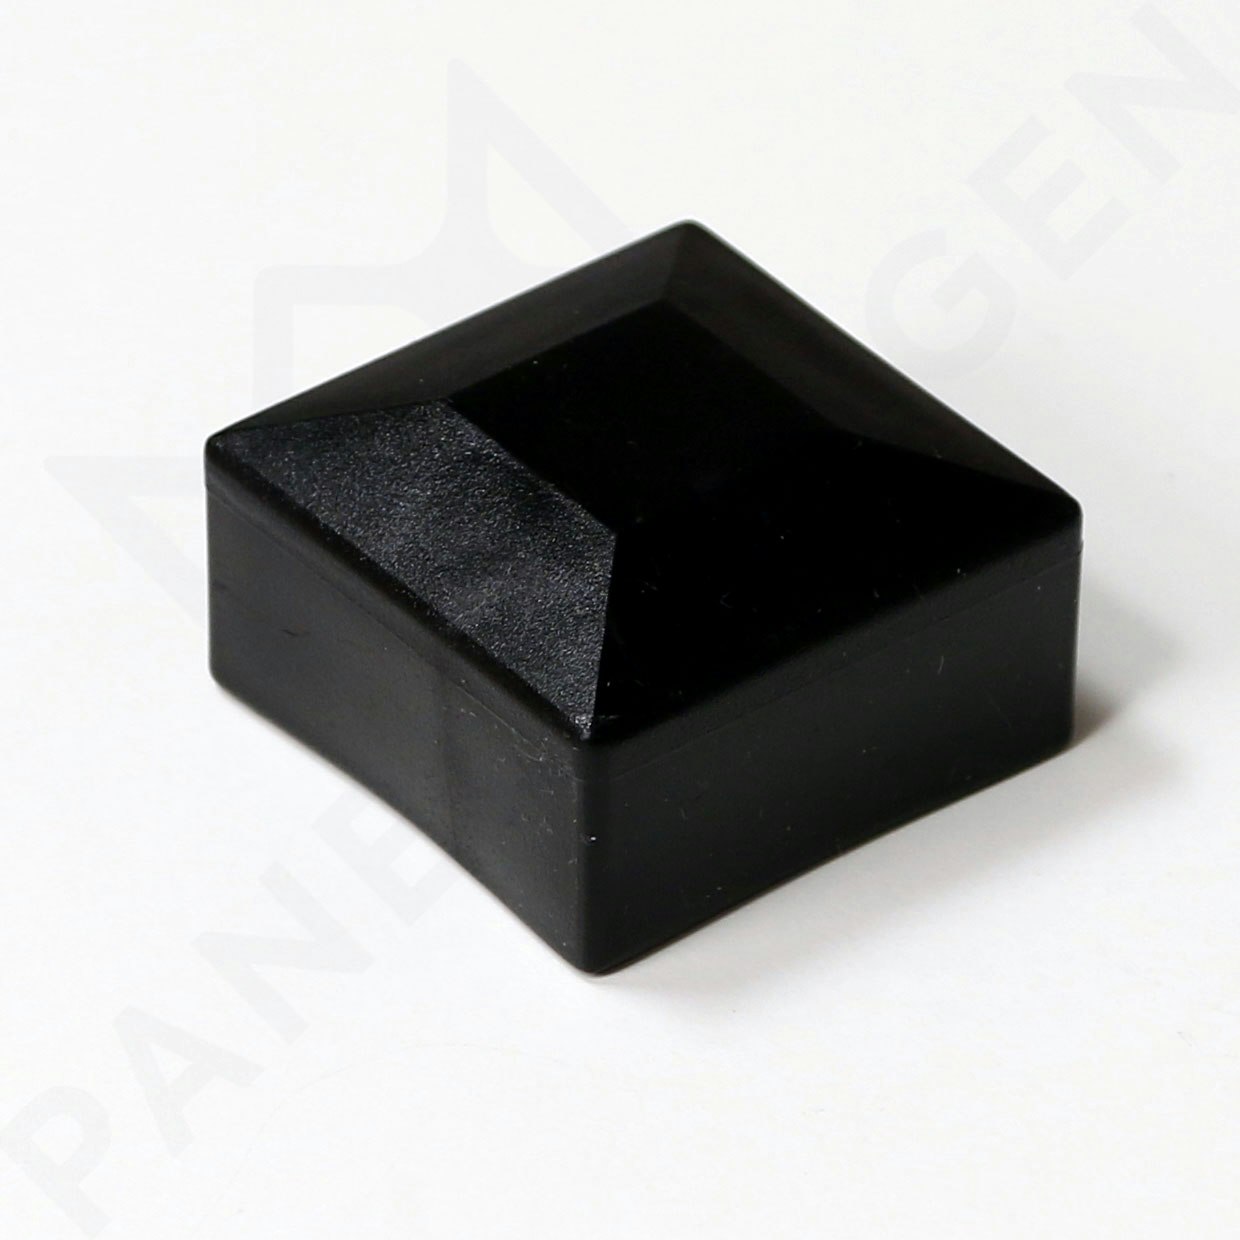 Ändstycke i svart plast för 40x40mm profil